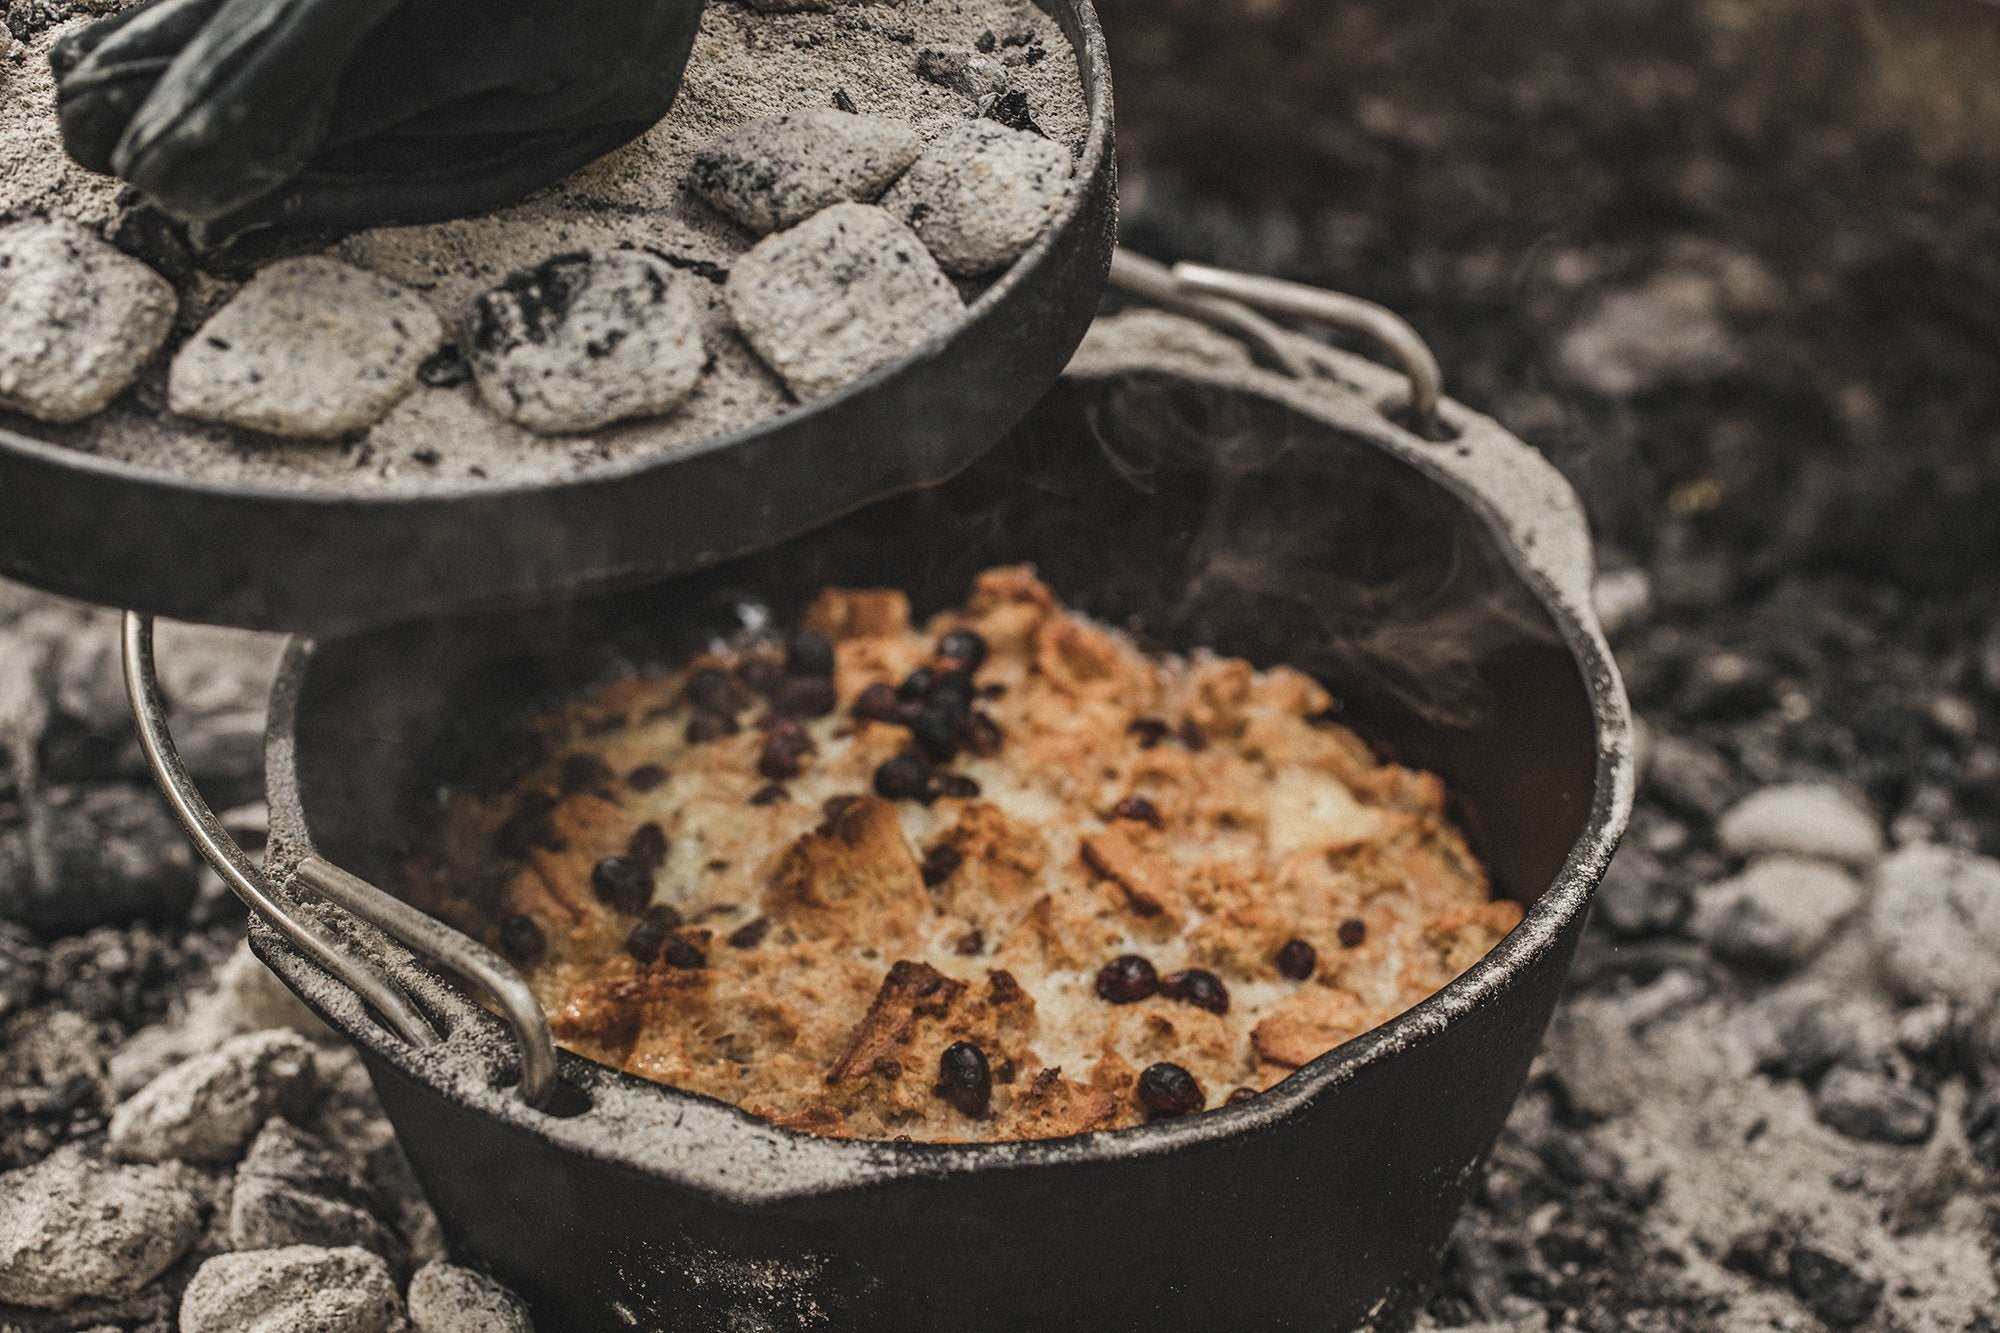 Campfire Dutch Oven Bread Recipe - (4.7/5)